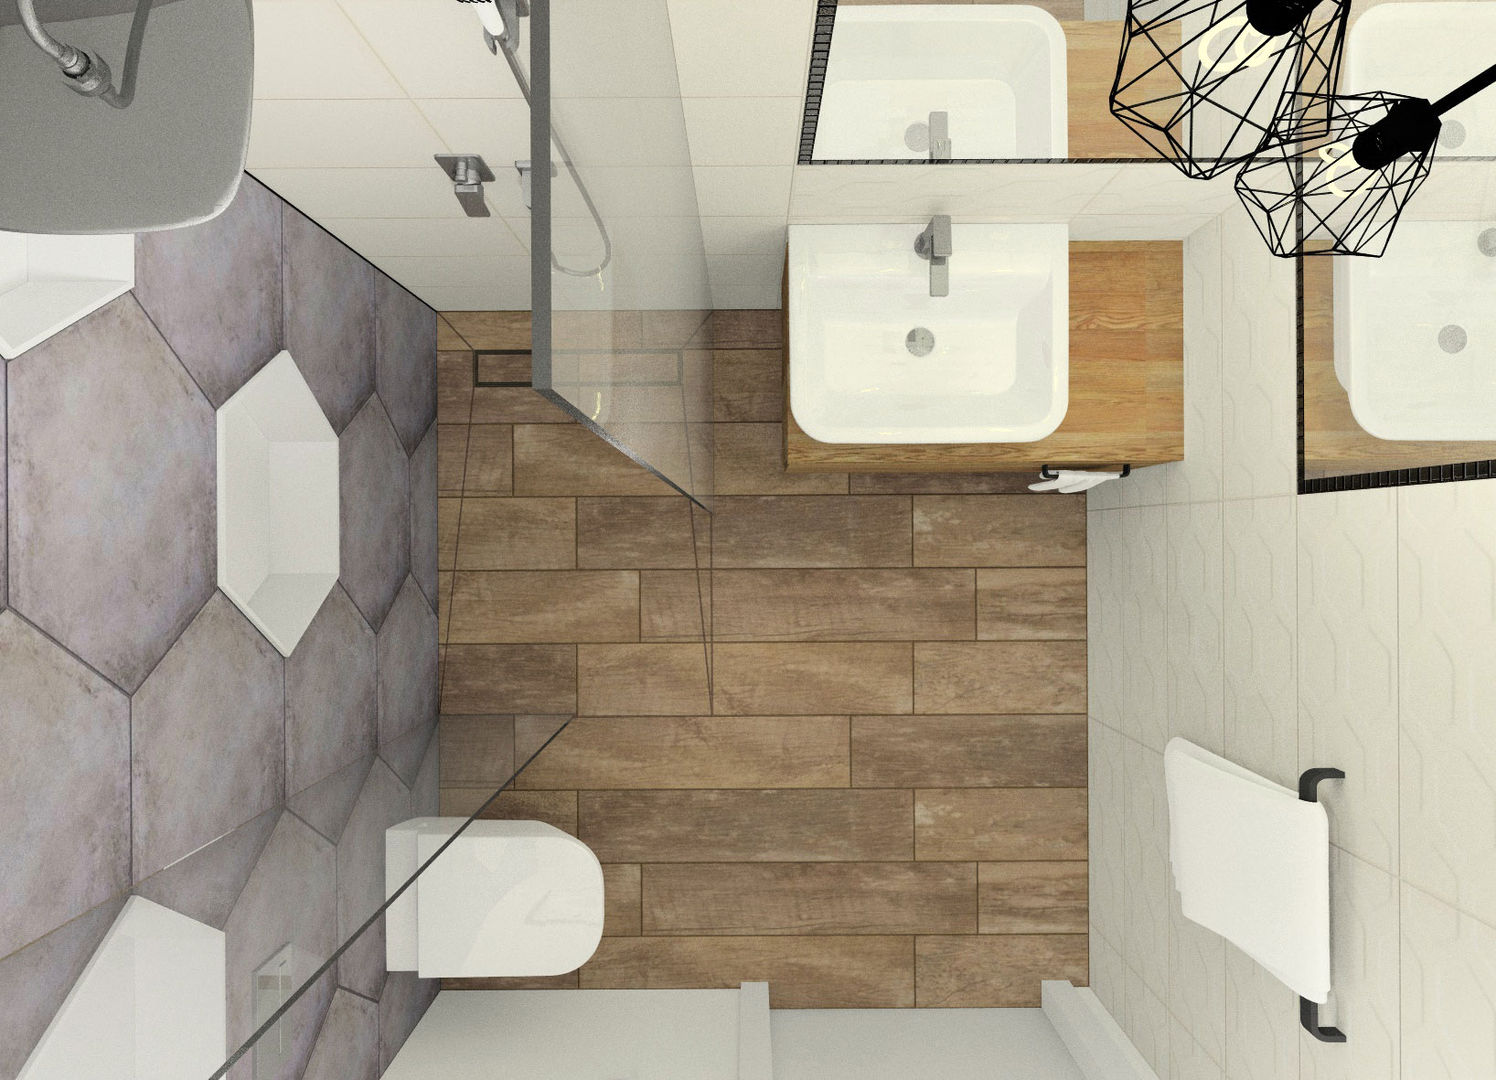 Mała łazienka w domu jednorodzinnym, Esteti Design Esteti Design Ванная комната в стиле минимализм Плитка